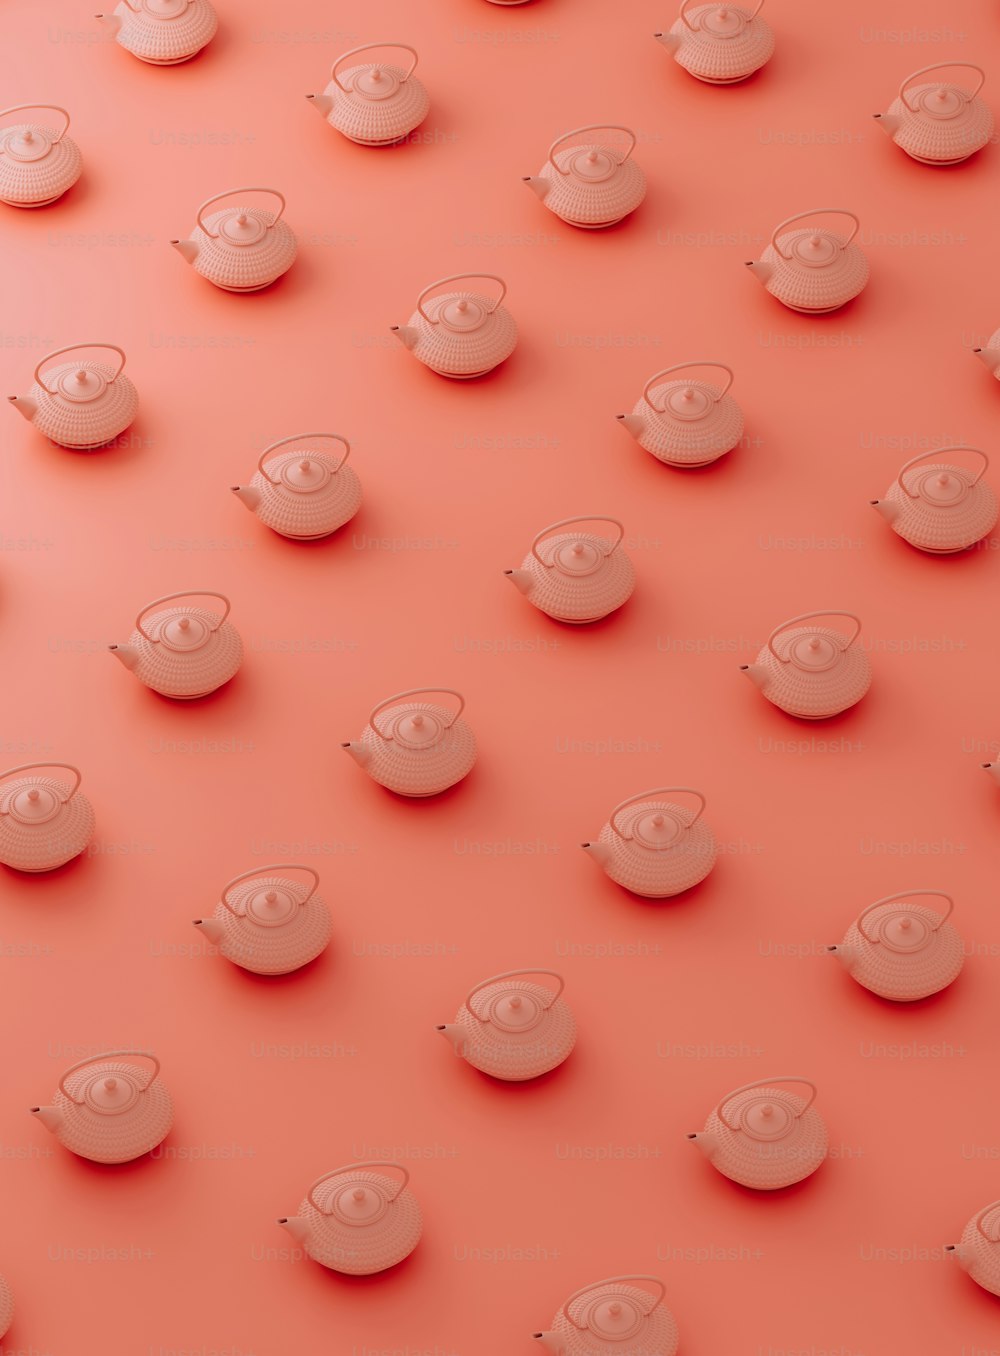 un gruppo di tazze e piattini su una superficie rosa